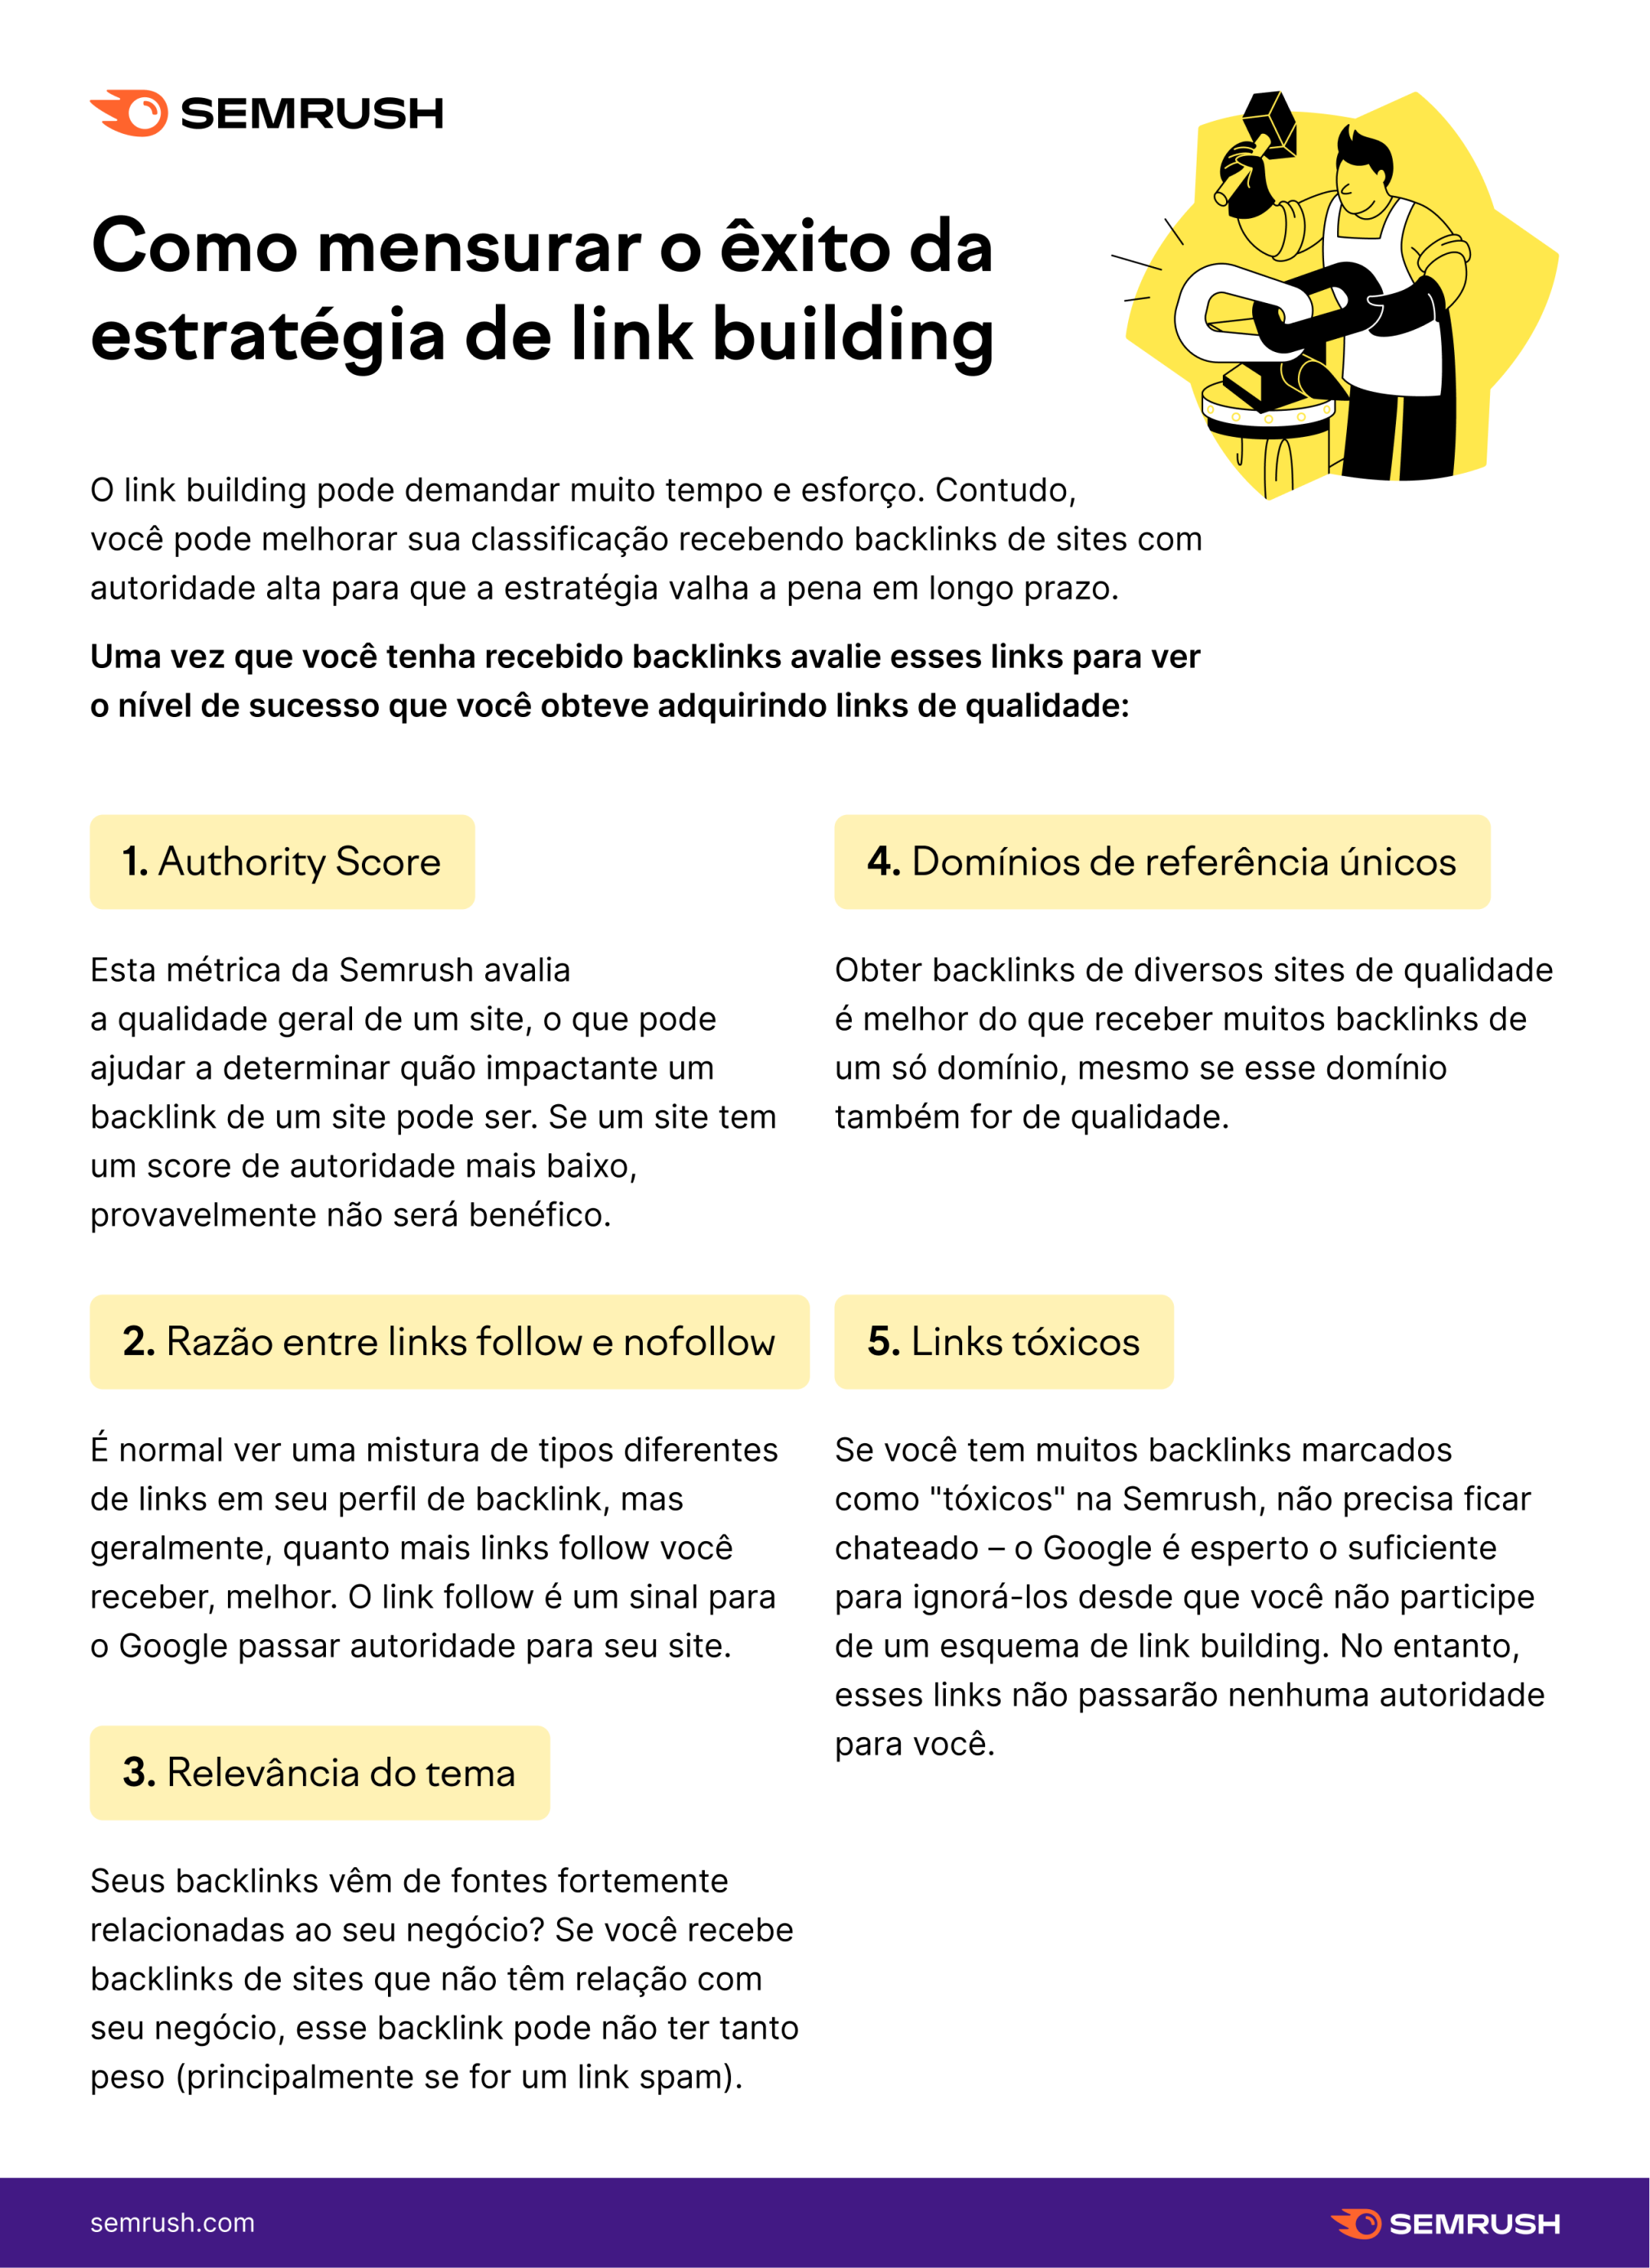 Como mensurar o êxito do link building